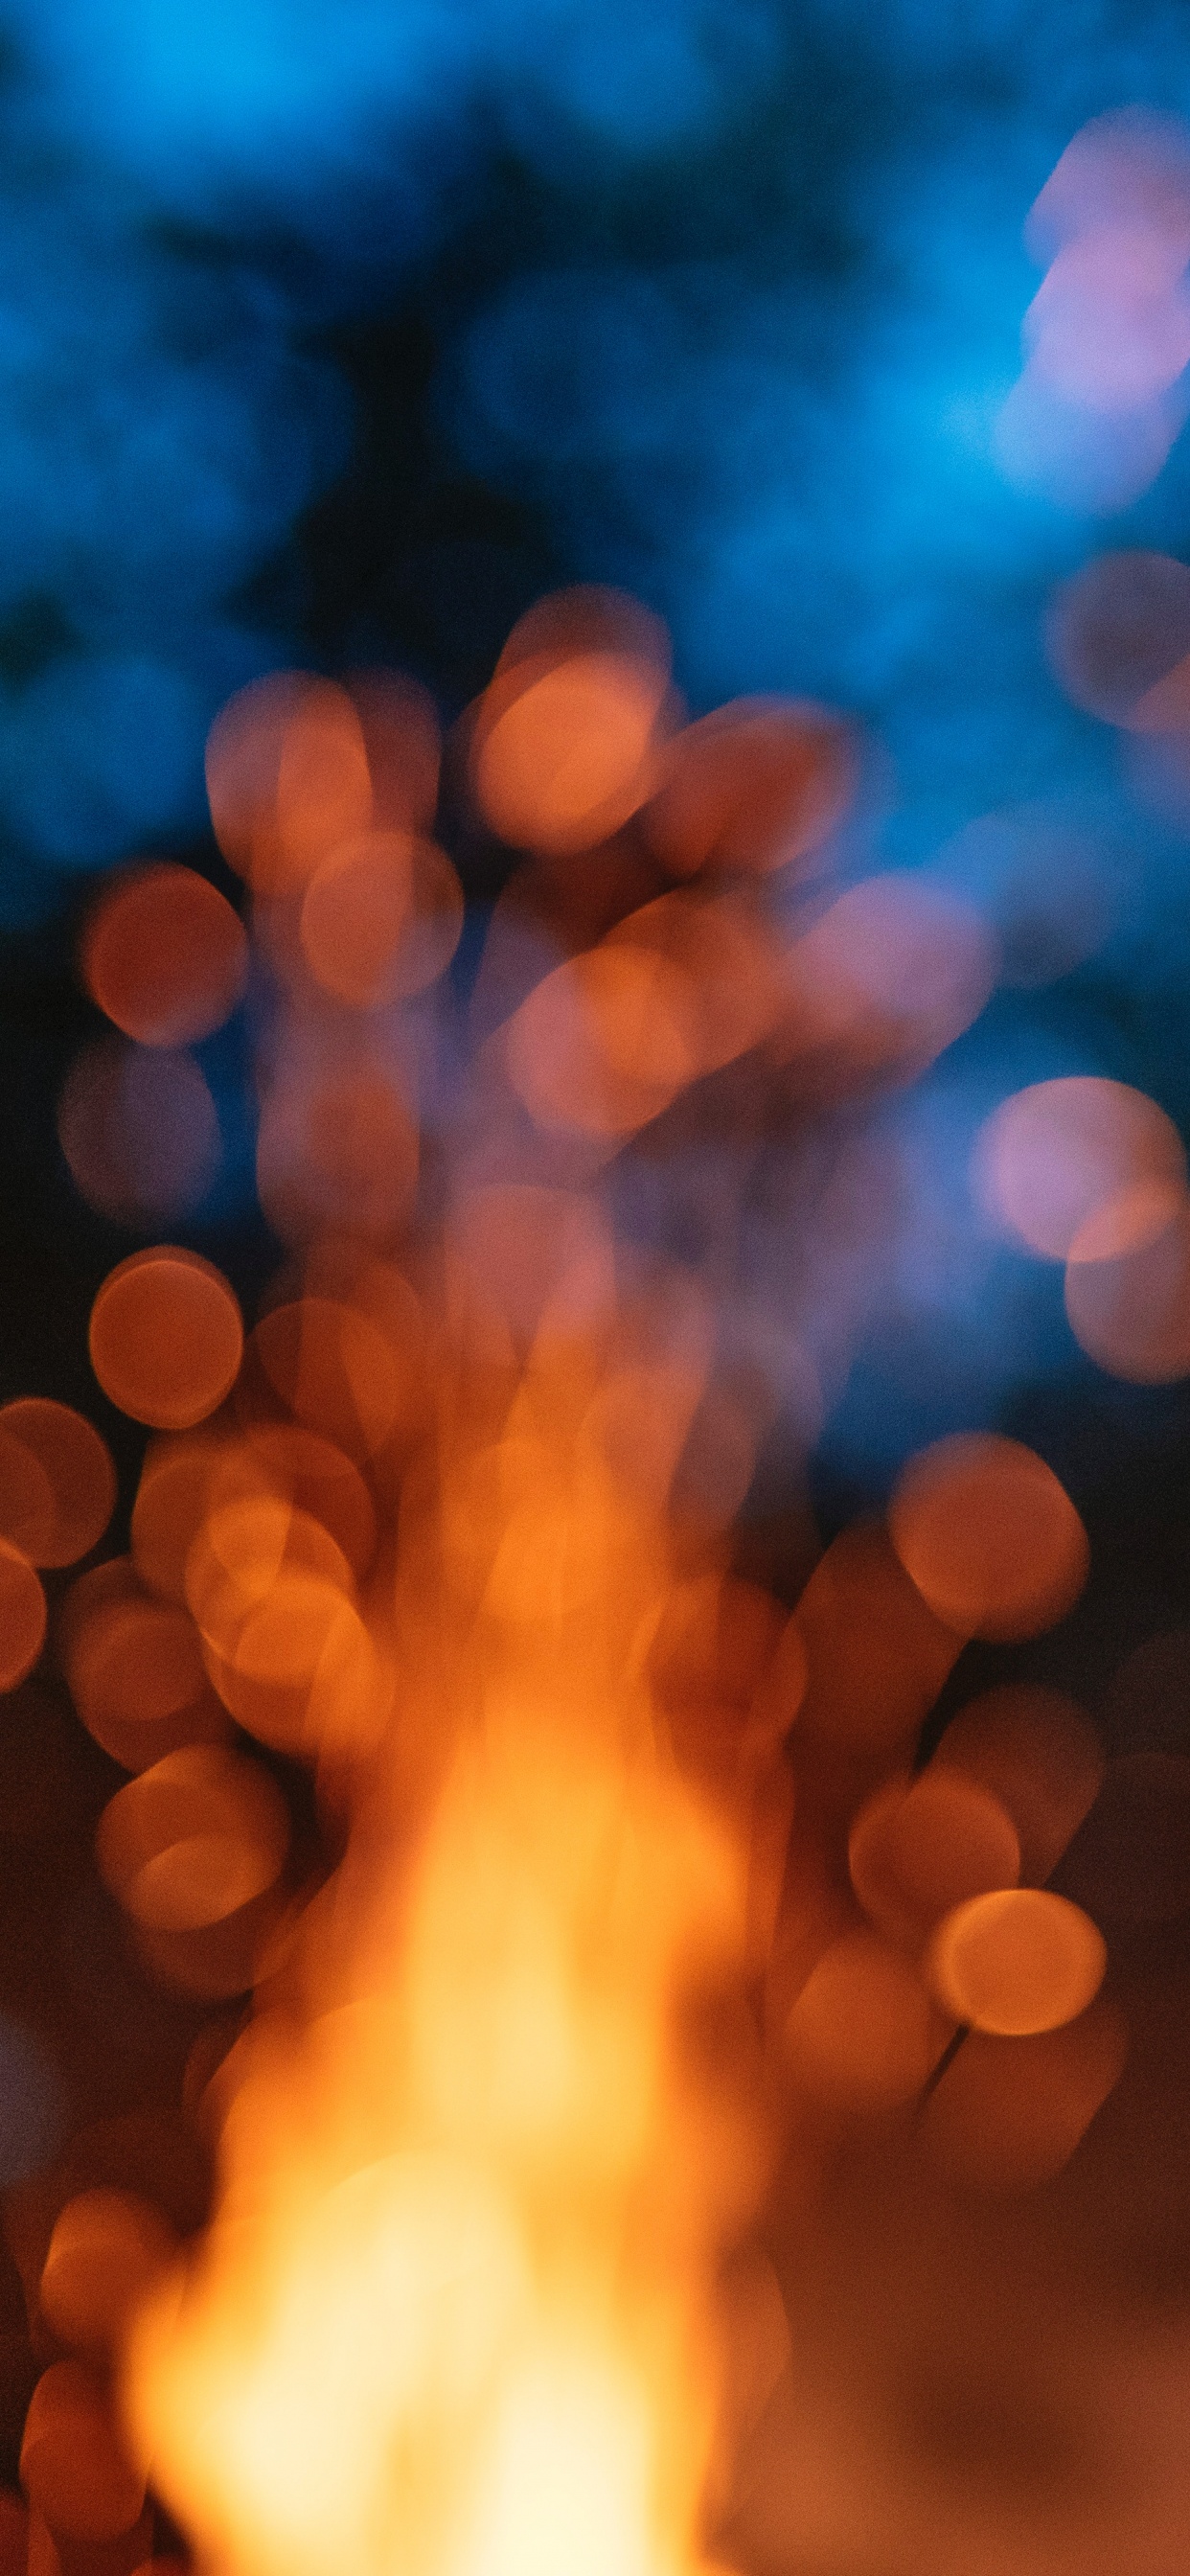 光, 热, 火焰, 天空, 篝火 壁纸 1242x2688 允许